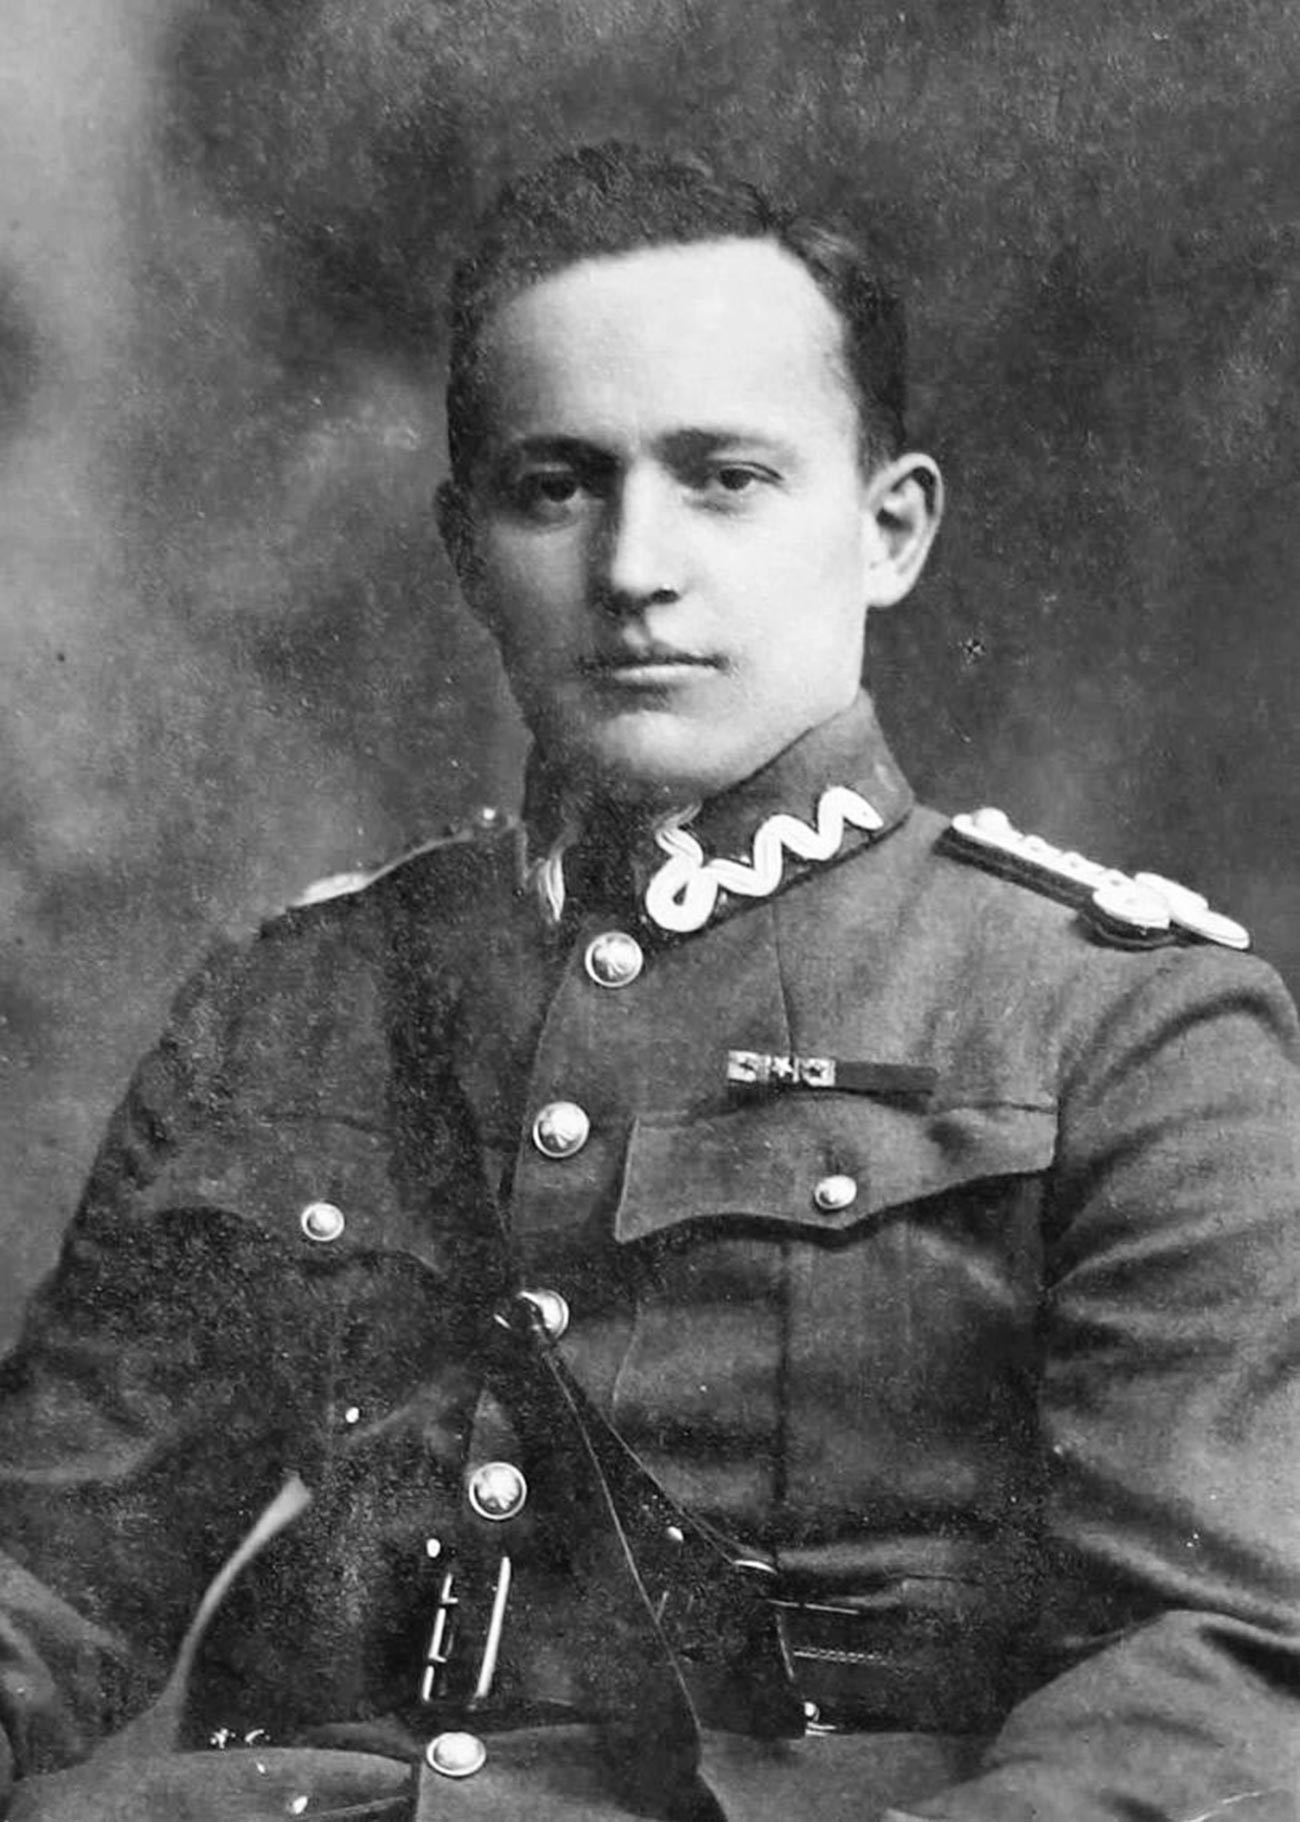 Cooper en Lwów durante la época del escuadrón Kościuszko